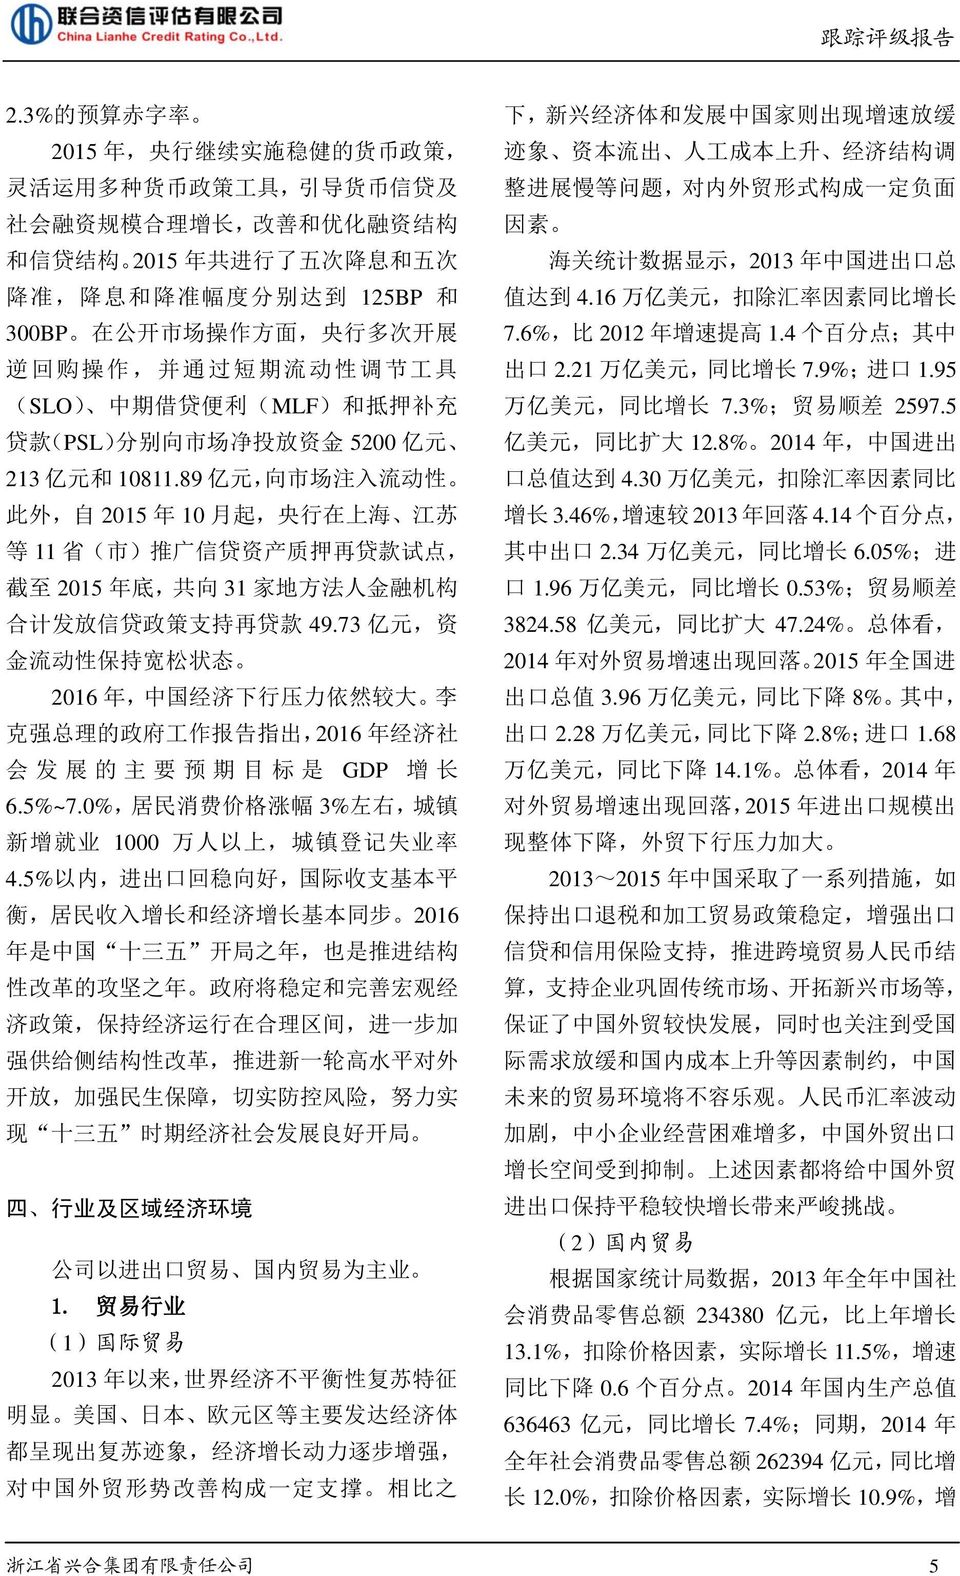 89 亿 元, 向 市 场 注 入 流 动 性 此 外, 自 2015 年 10 月 起, 央 行 在 上 海 江 苏 等 11 省 ( 市 ) 推 广 信 贷 资 产 质 押 再 贷 款 试 点, 截 至 2015 年 底, 共 向 31 家 地 方 法 人 金 融 机 构 合 计 发 放 信 贷 政 策 支 持 再 贷 款 49.